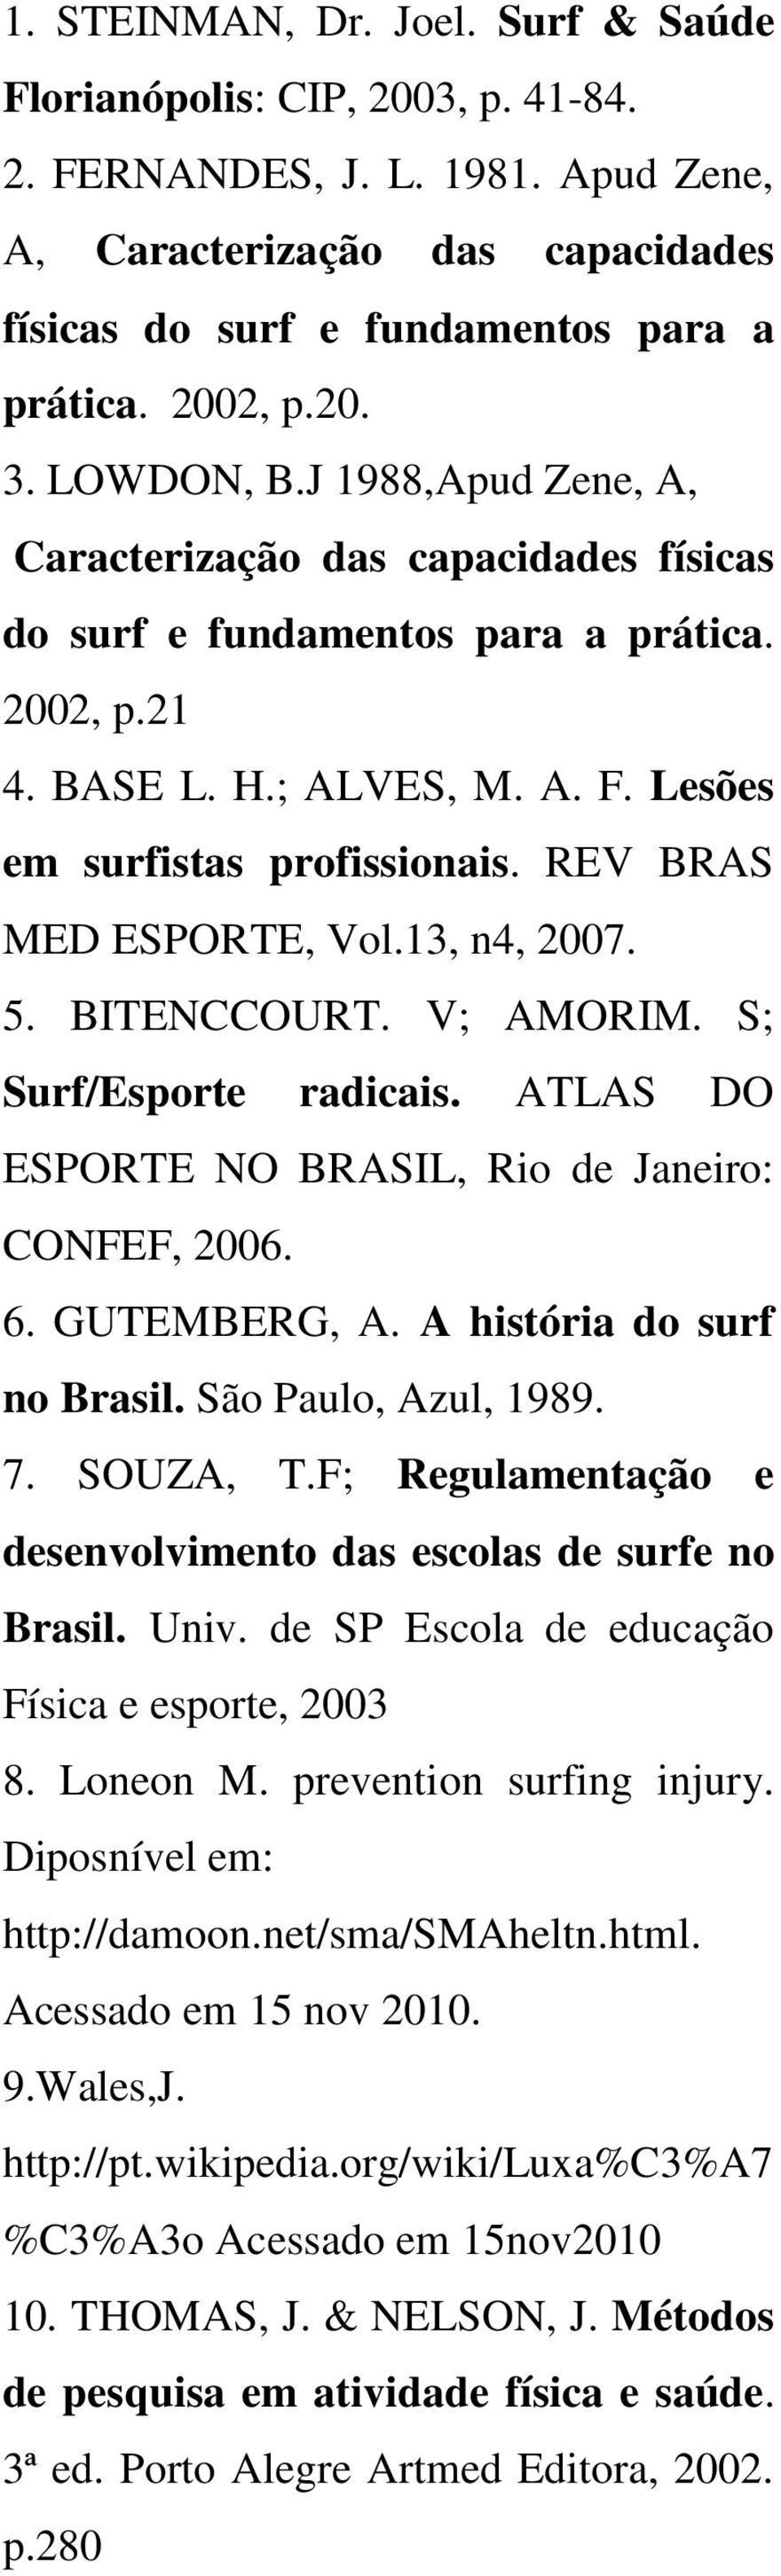 REV BRAS MED ESPORTE, Vol.13, n4, 2007. 5. BITENCCOURT. V; AMORIM. S; Surf/Esporte radicais. ATLAS DO ESPORTE NO BRASIL, Rio de Janeiro: CONFEF, 2006. 6. GUTEMBERG, A. A história do surf no Brasil.